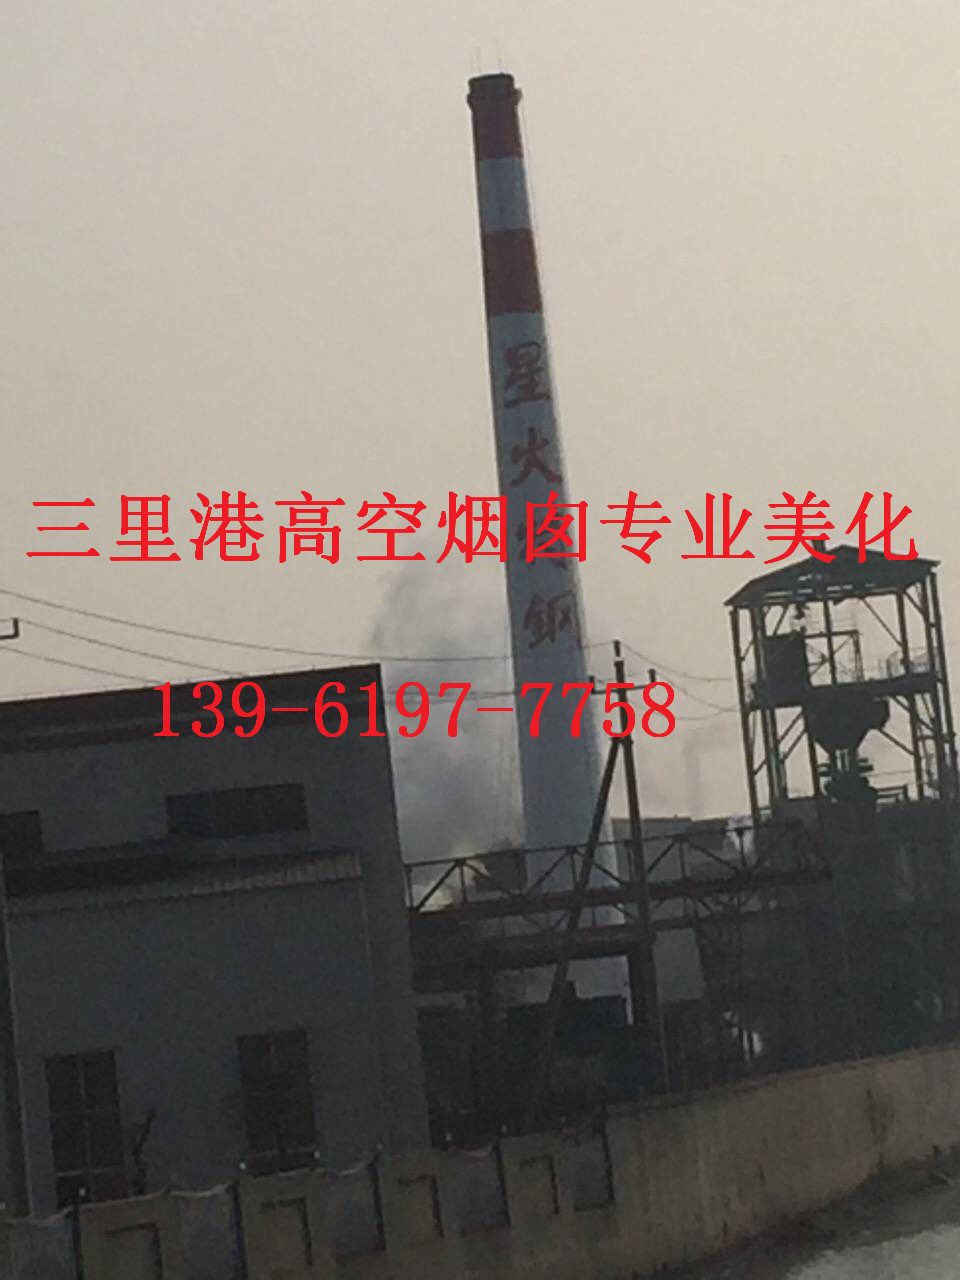 沅江市烟囱刷航标施工方案工程好企业